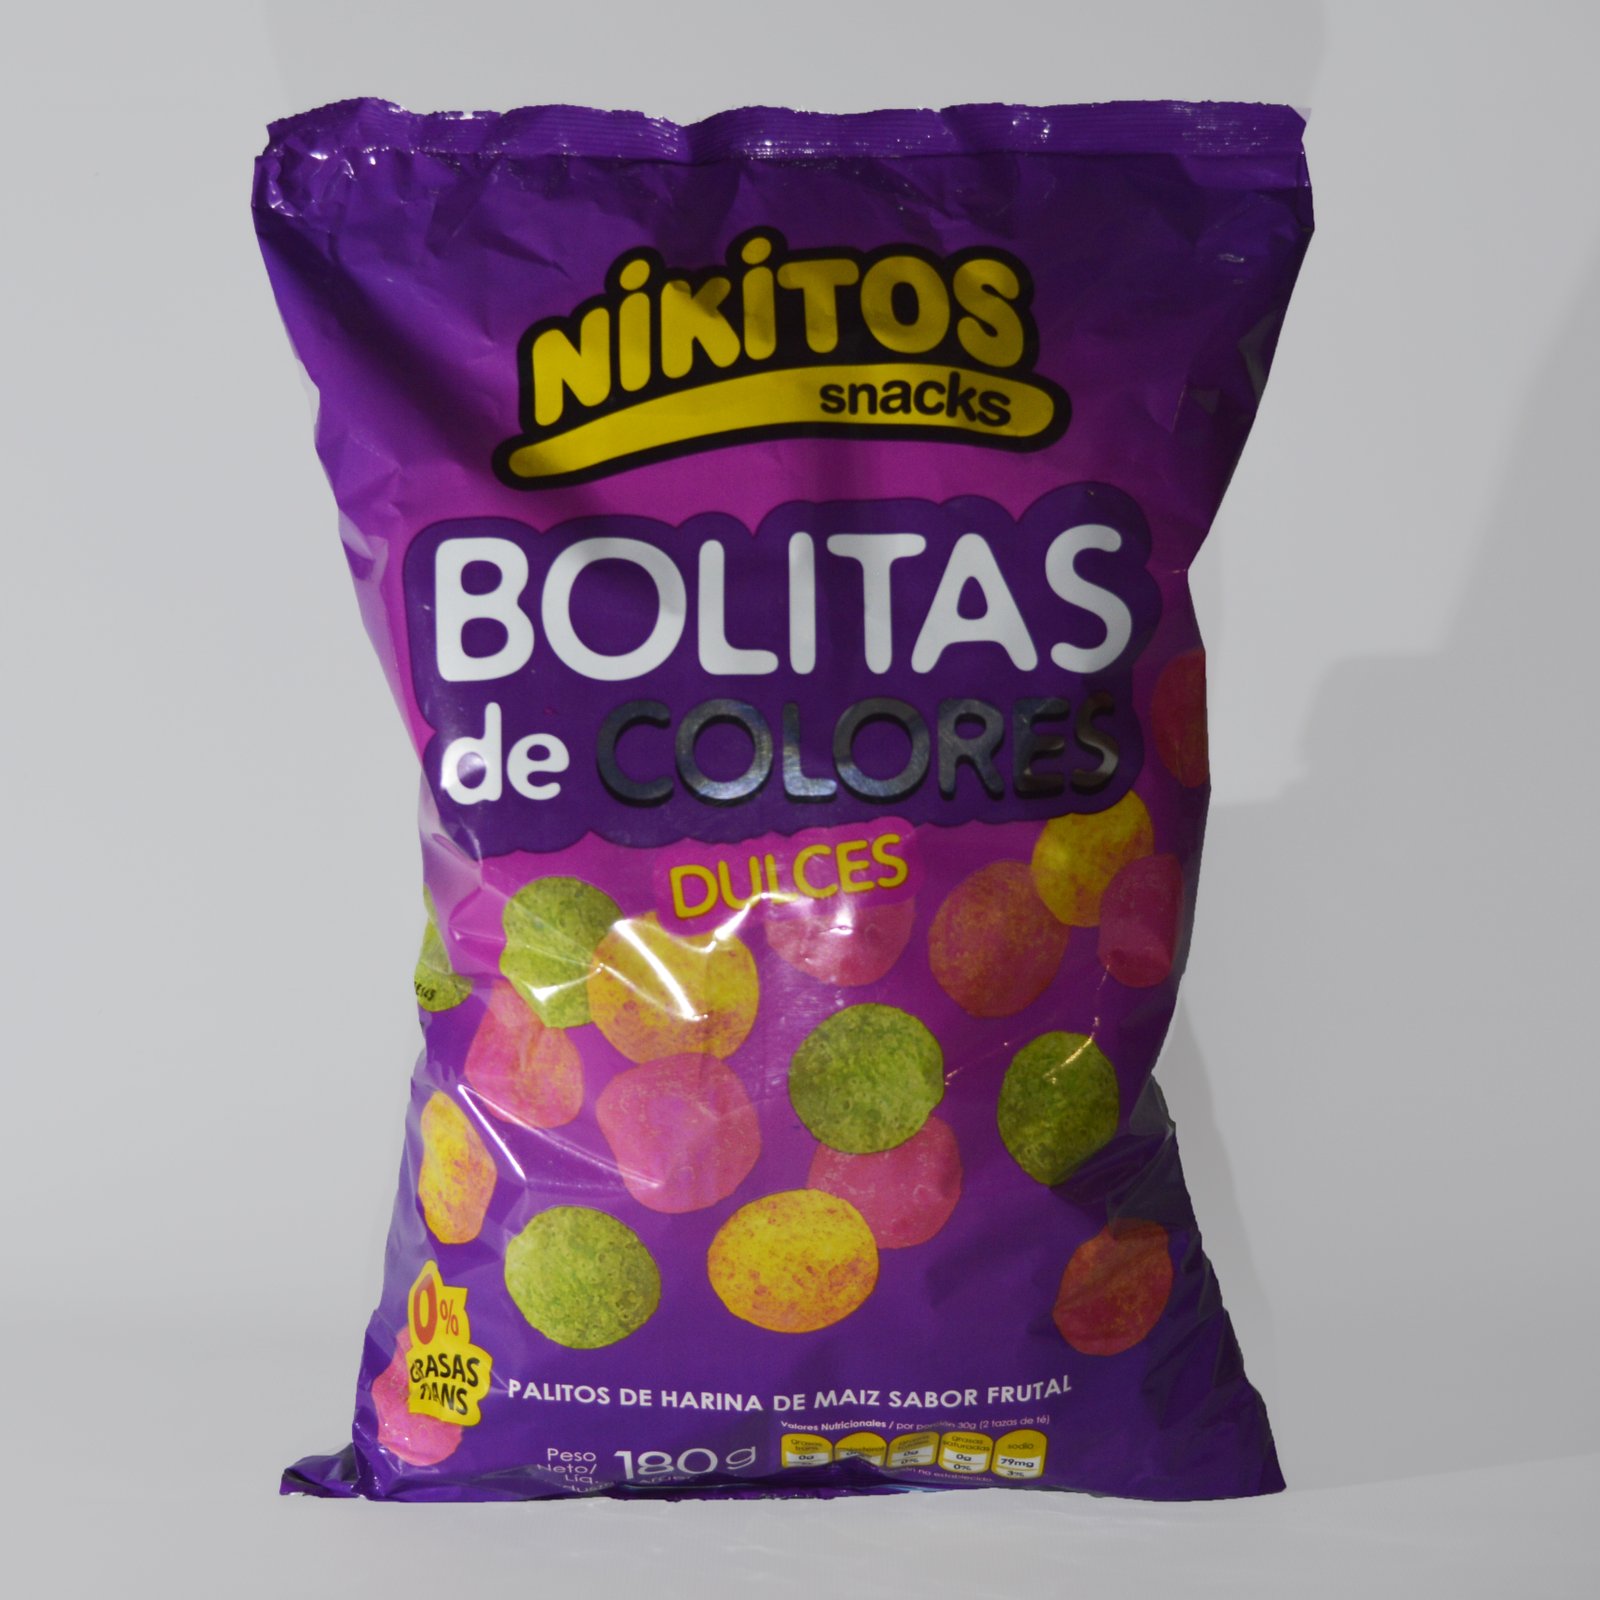 Bolitas de colores – Nikitos – 180 Grms | The roxy